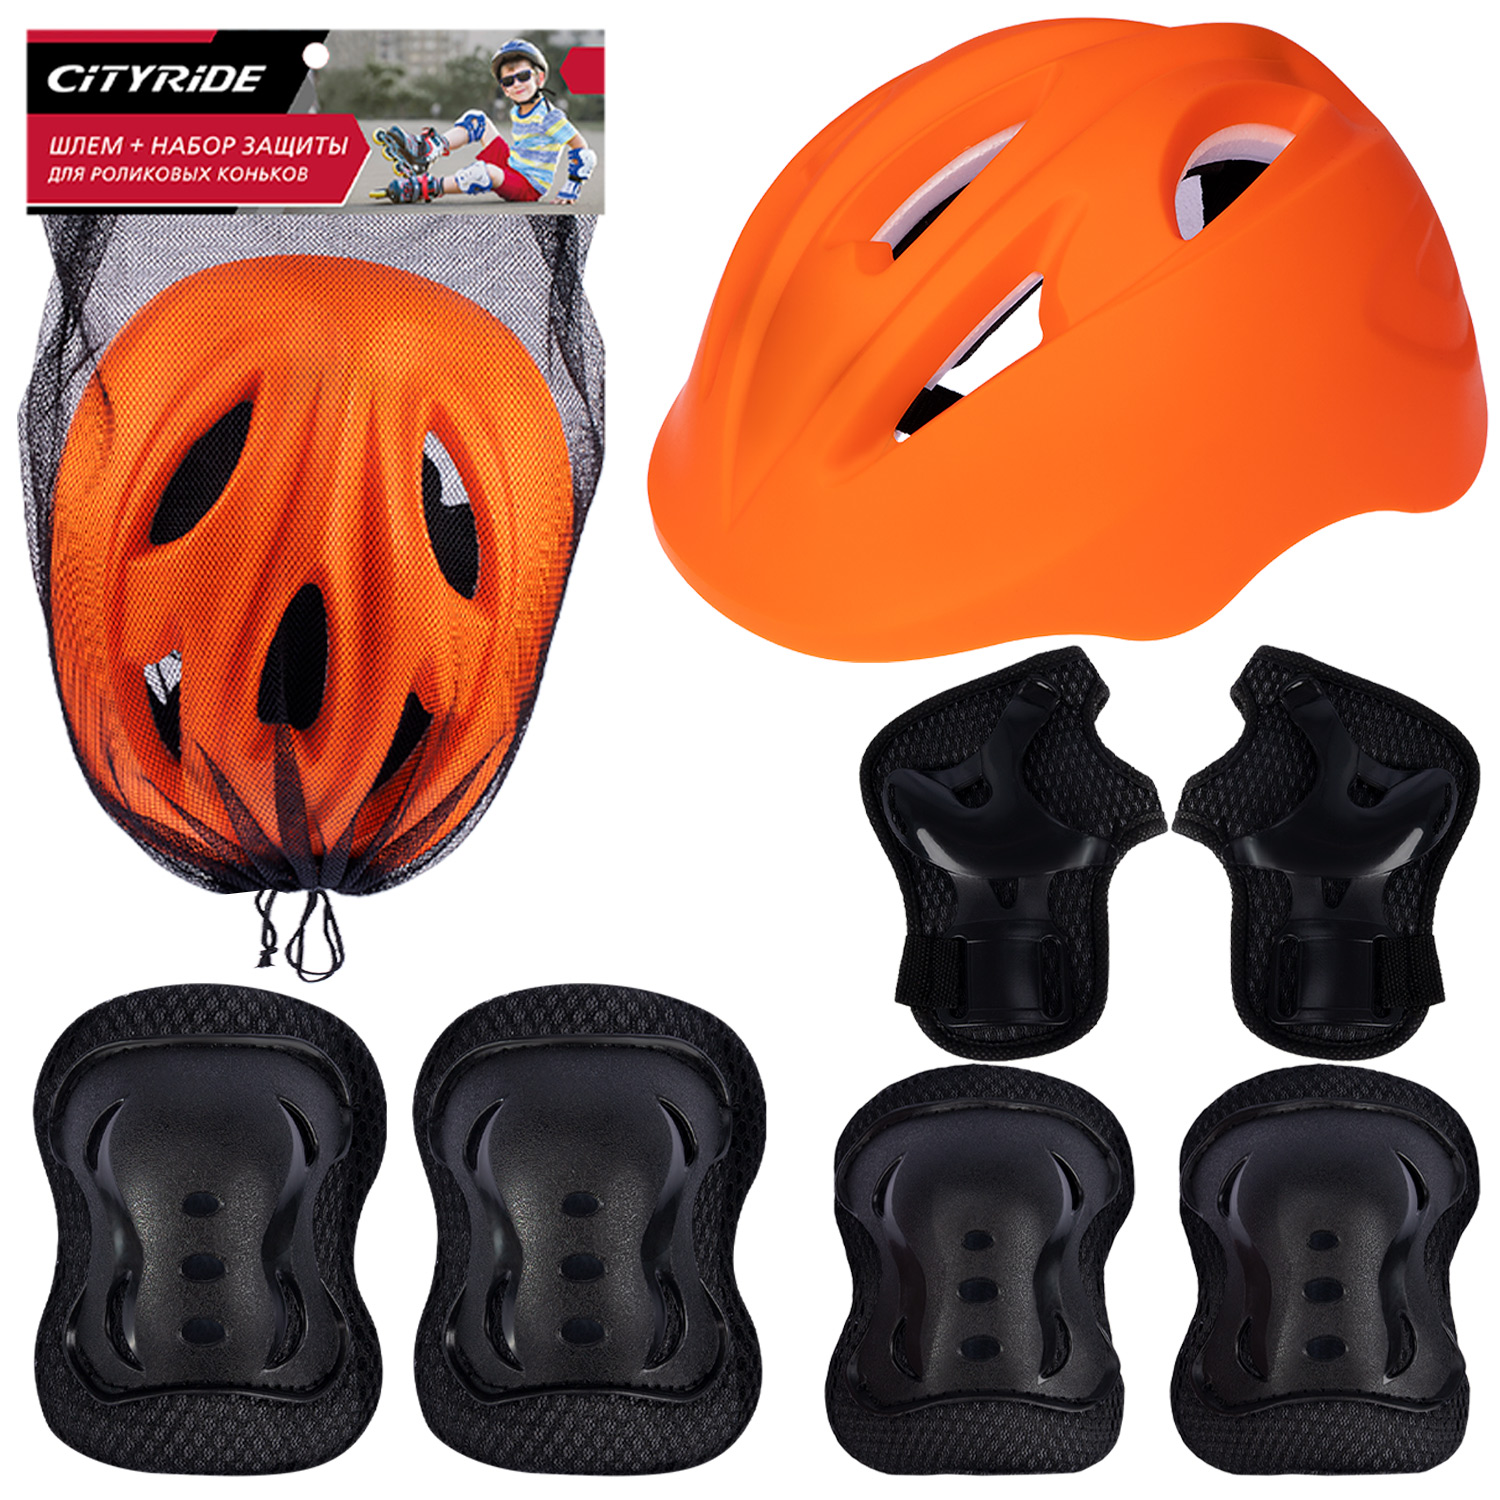 Комплект шлем, спортивная защита для детей ТМ City Ride, размер универсальный, JB0211562